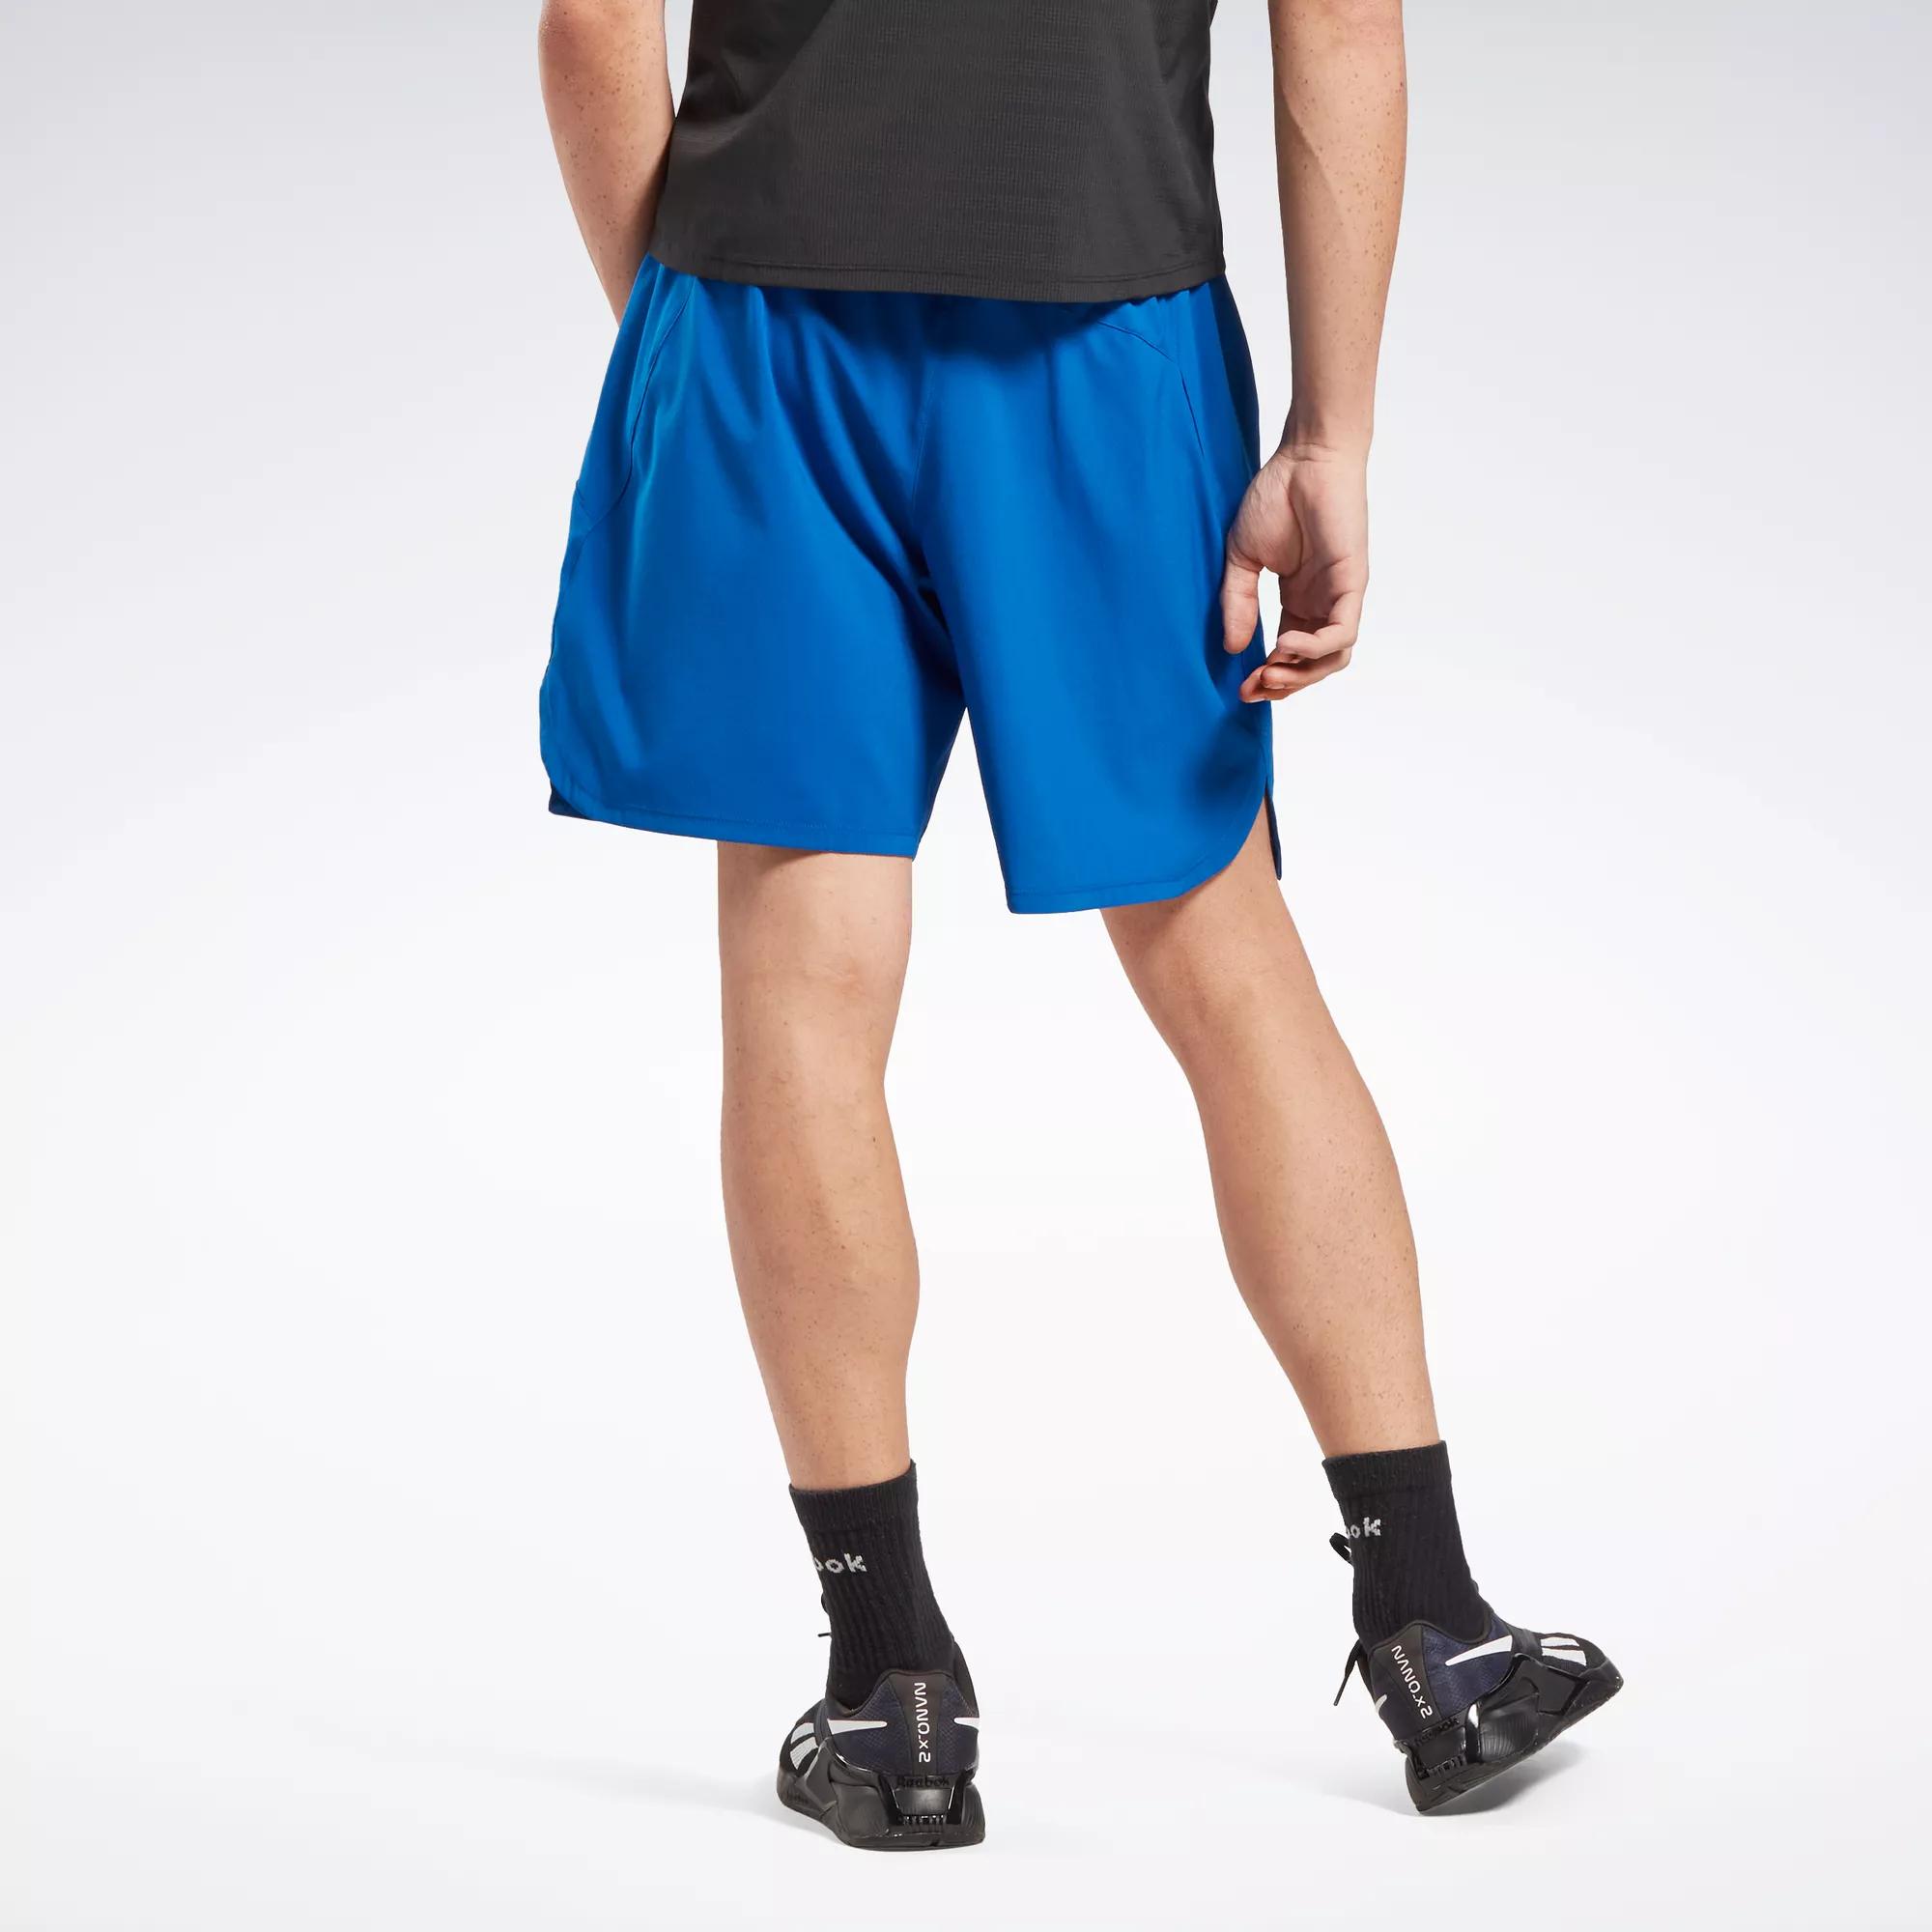 Men's Unlined Sportsuit Tennis Shorts Blue